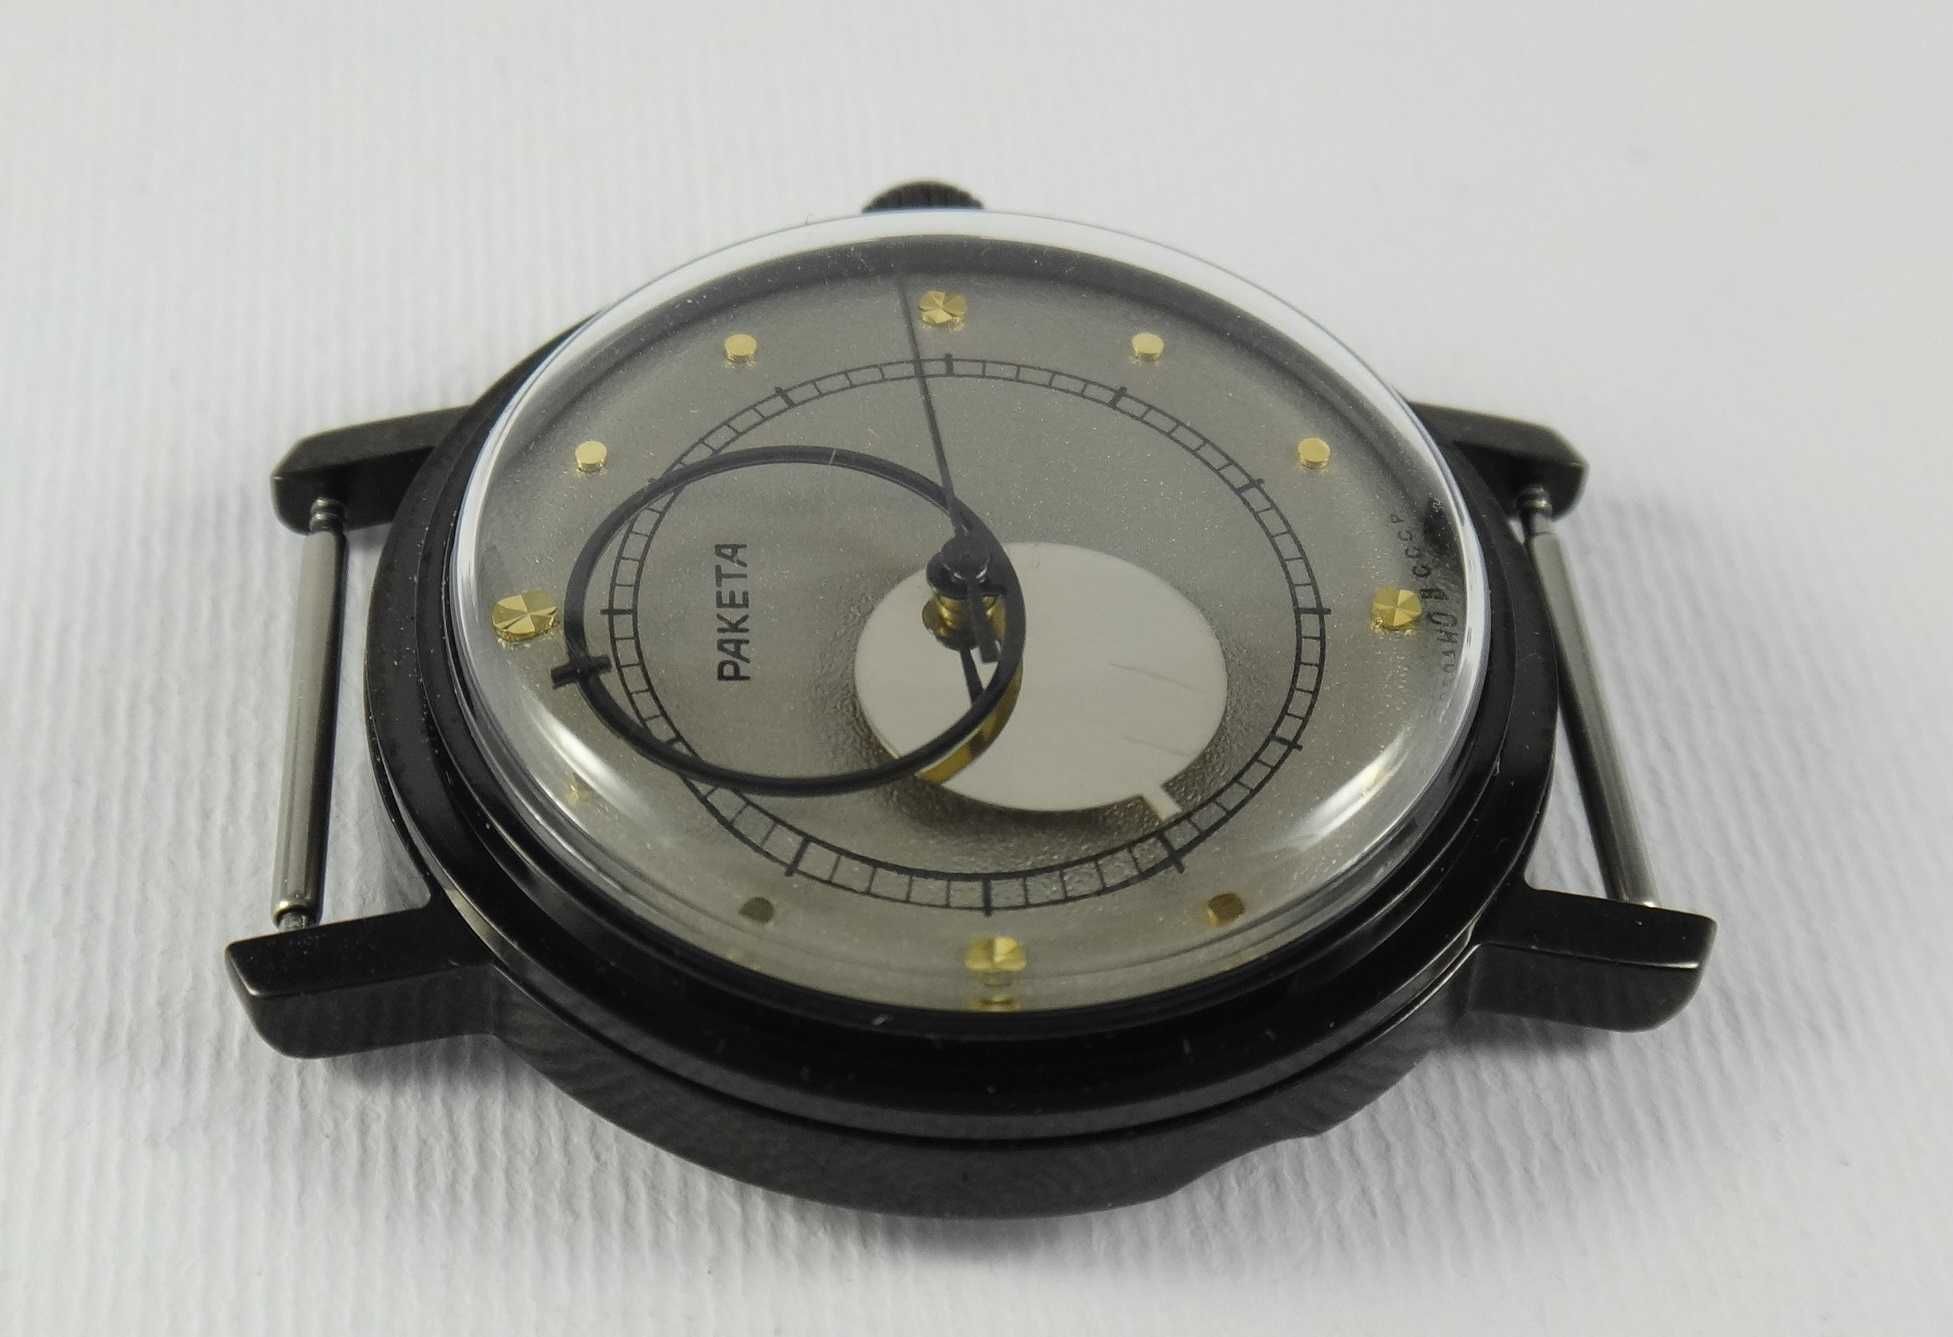 Часы Ракета Коперник Винтажные механические часы .Обслужегы часовым